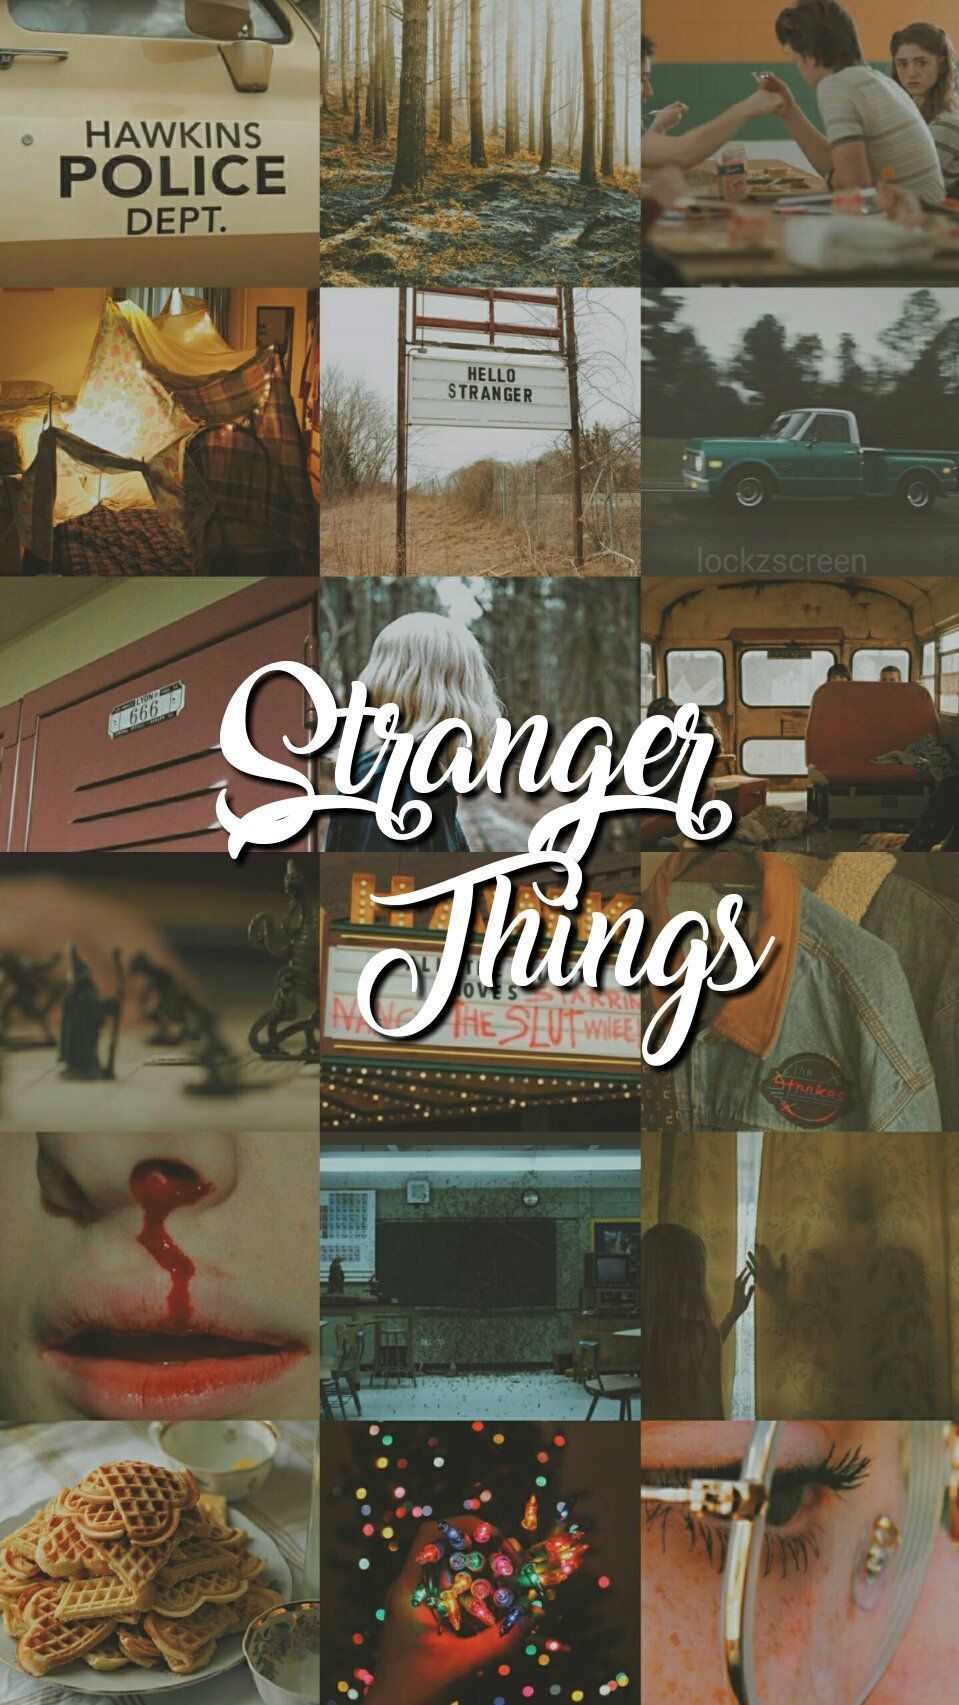 stranger things wallpaper. Stranger things aesthetic, Stranger things quote, Stranger things